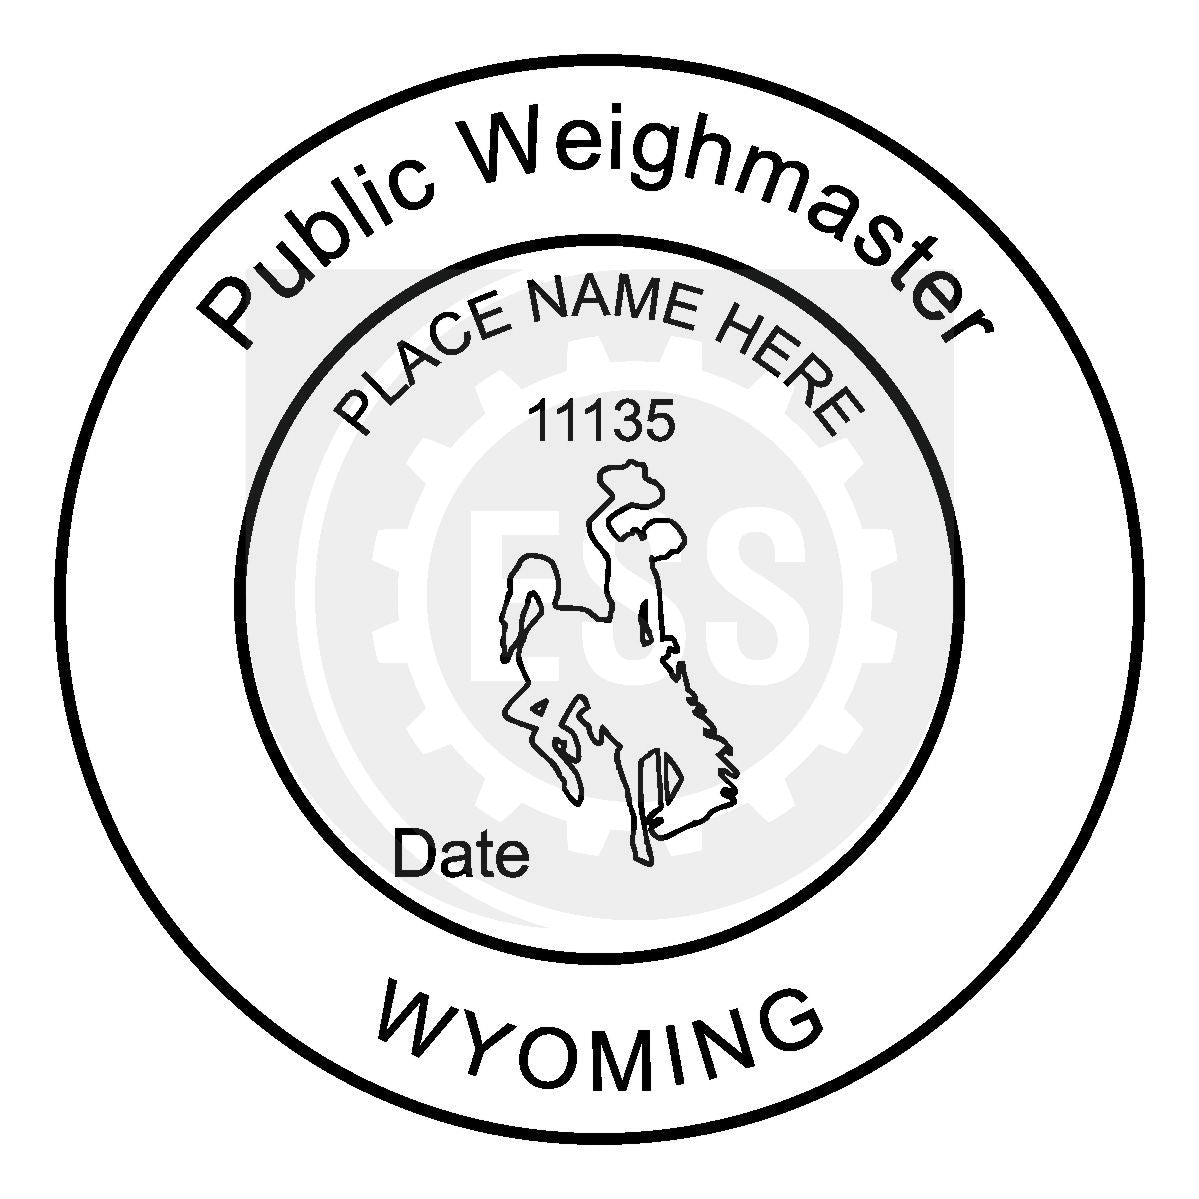 Wyoming Public Weighmaster Seal Setup